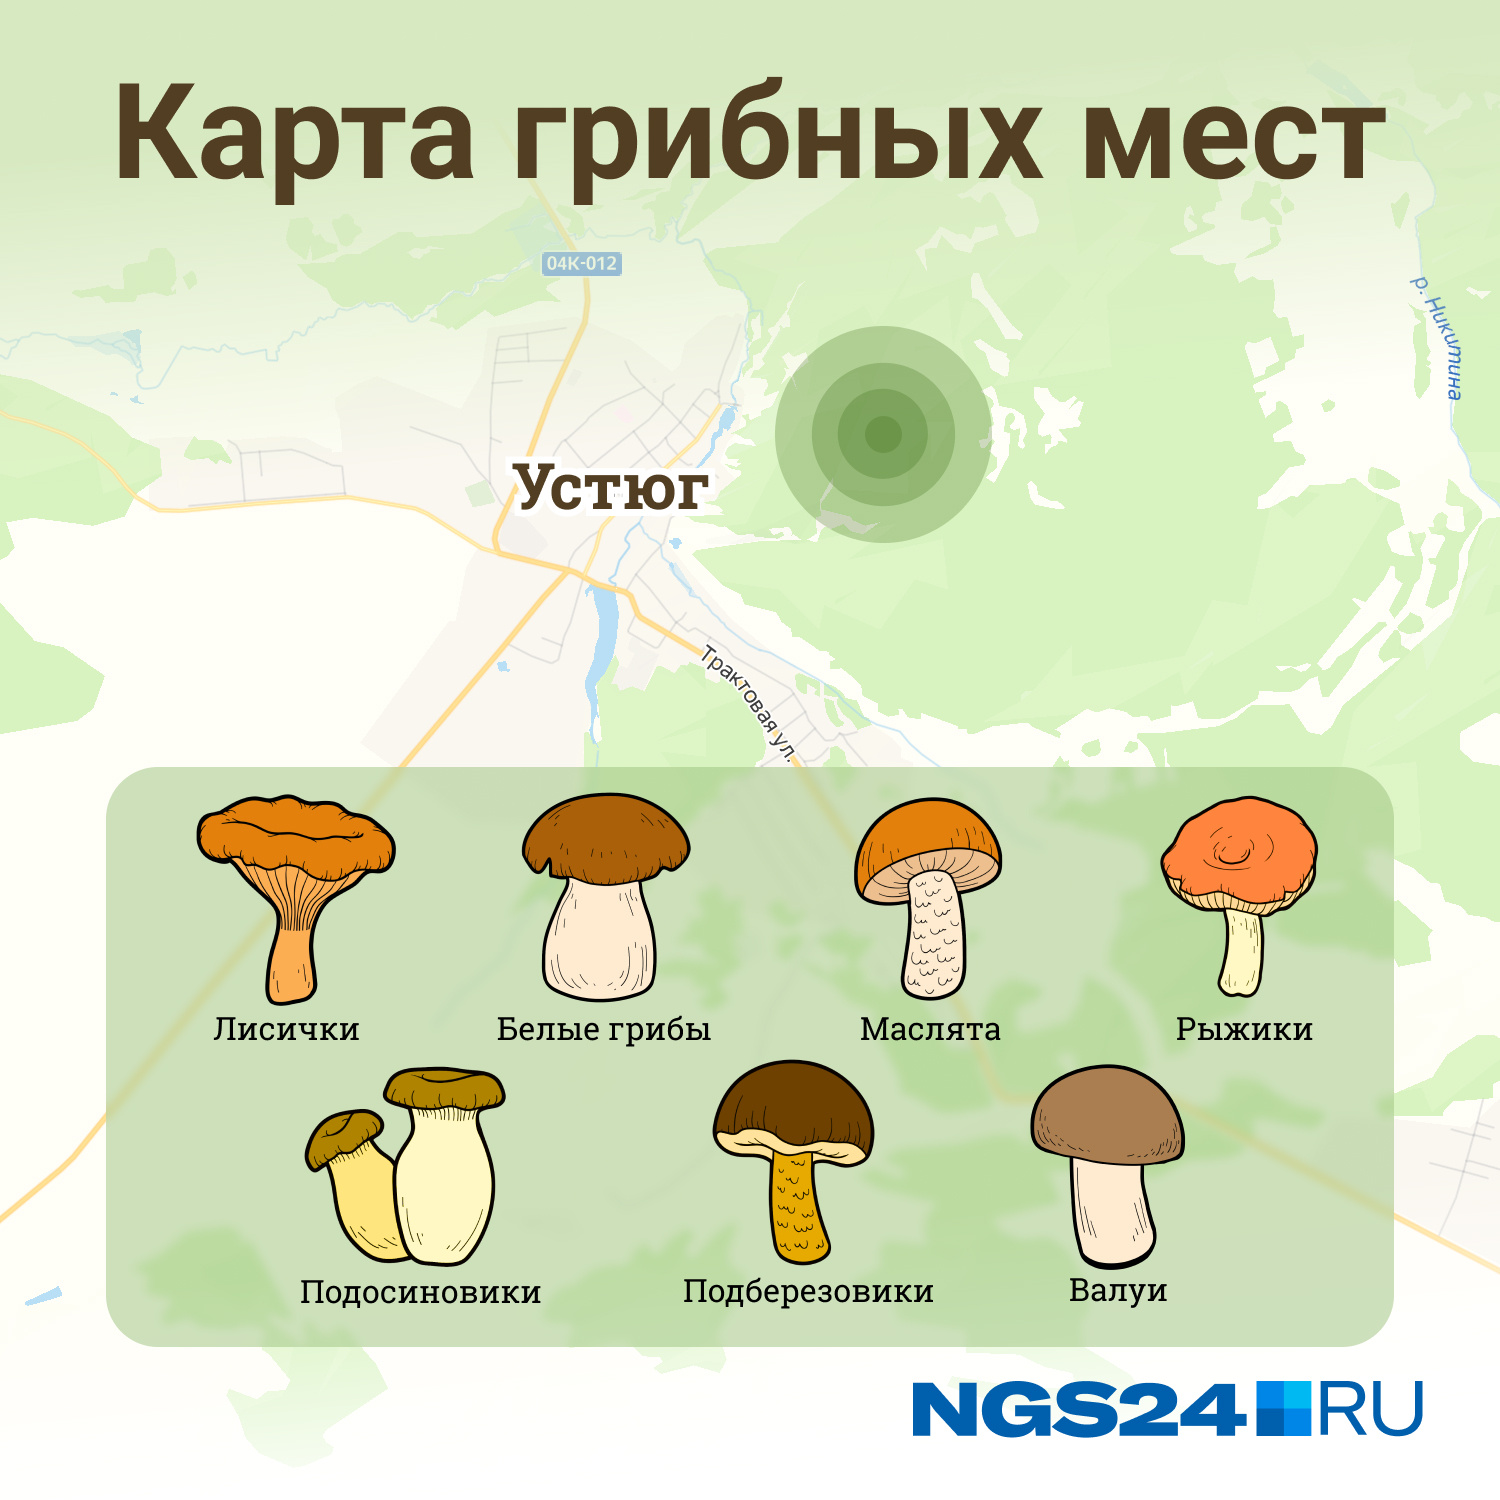 Карта грибных мест